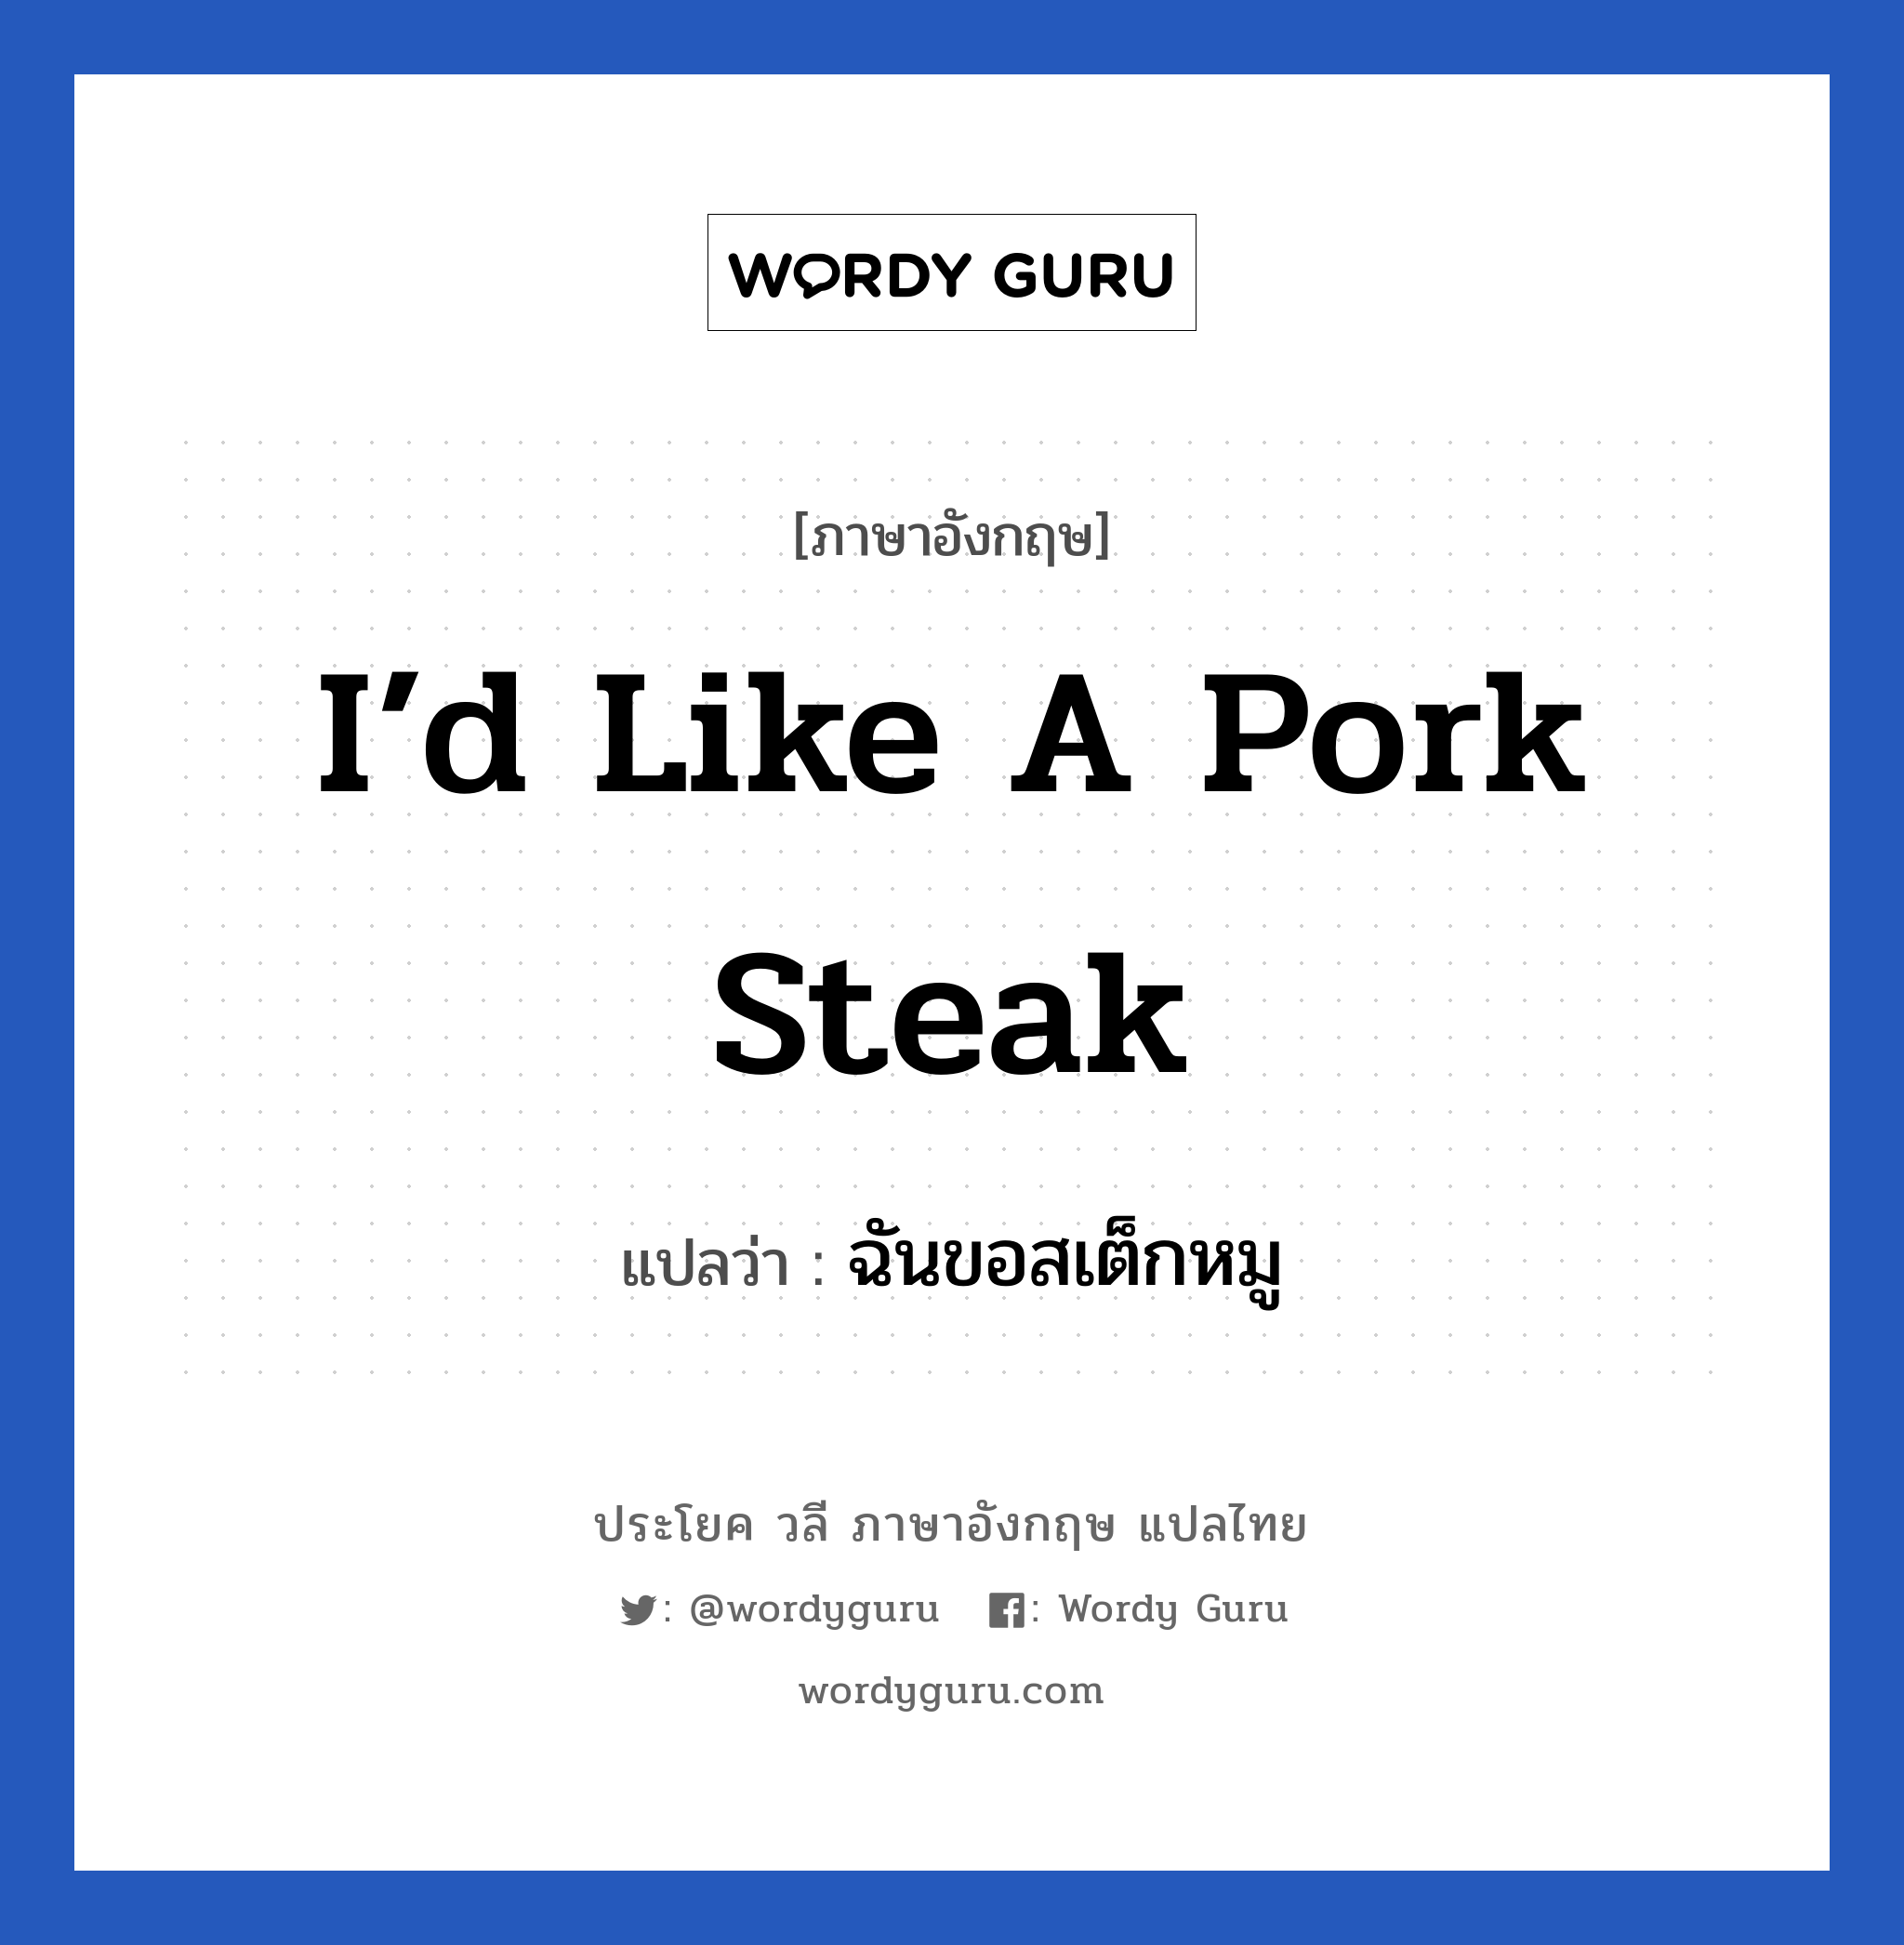 I’d like a pork steak แปลว่า?, วลีภาษาอังกฤษ I’d like a pork steak แปลว่า ฉันขอสเต็กหมู